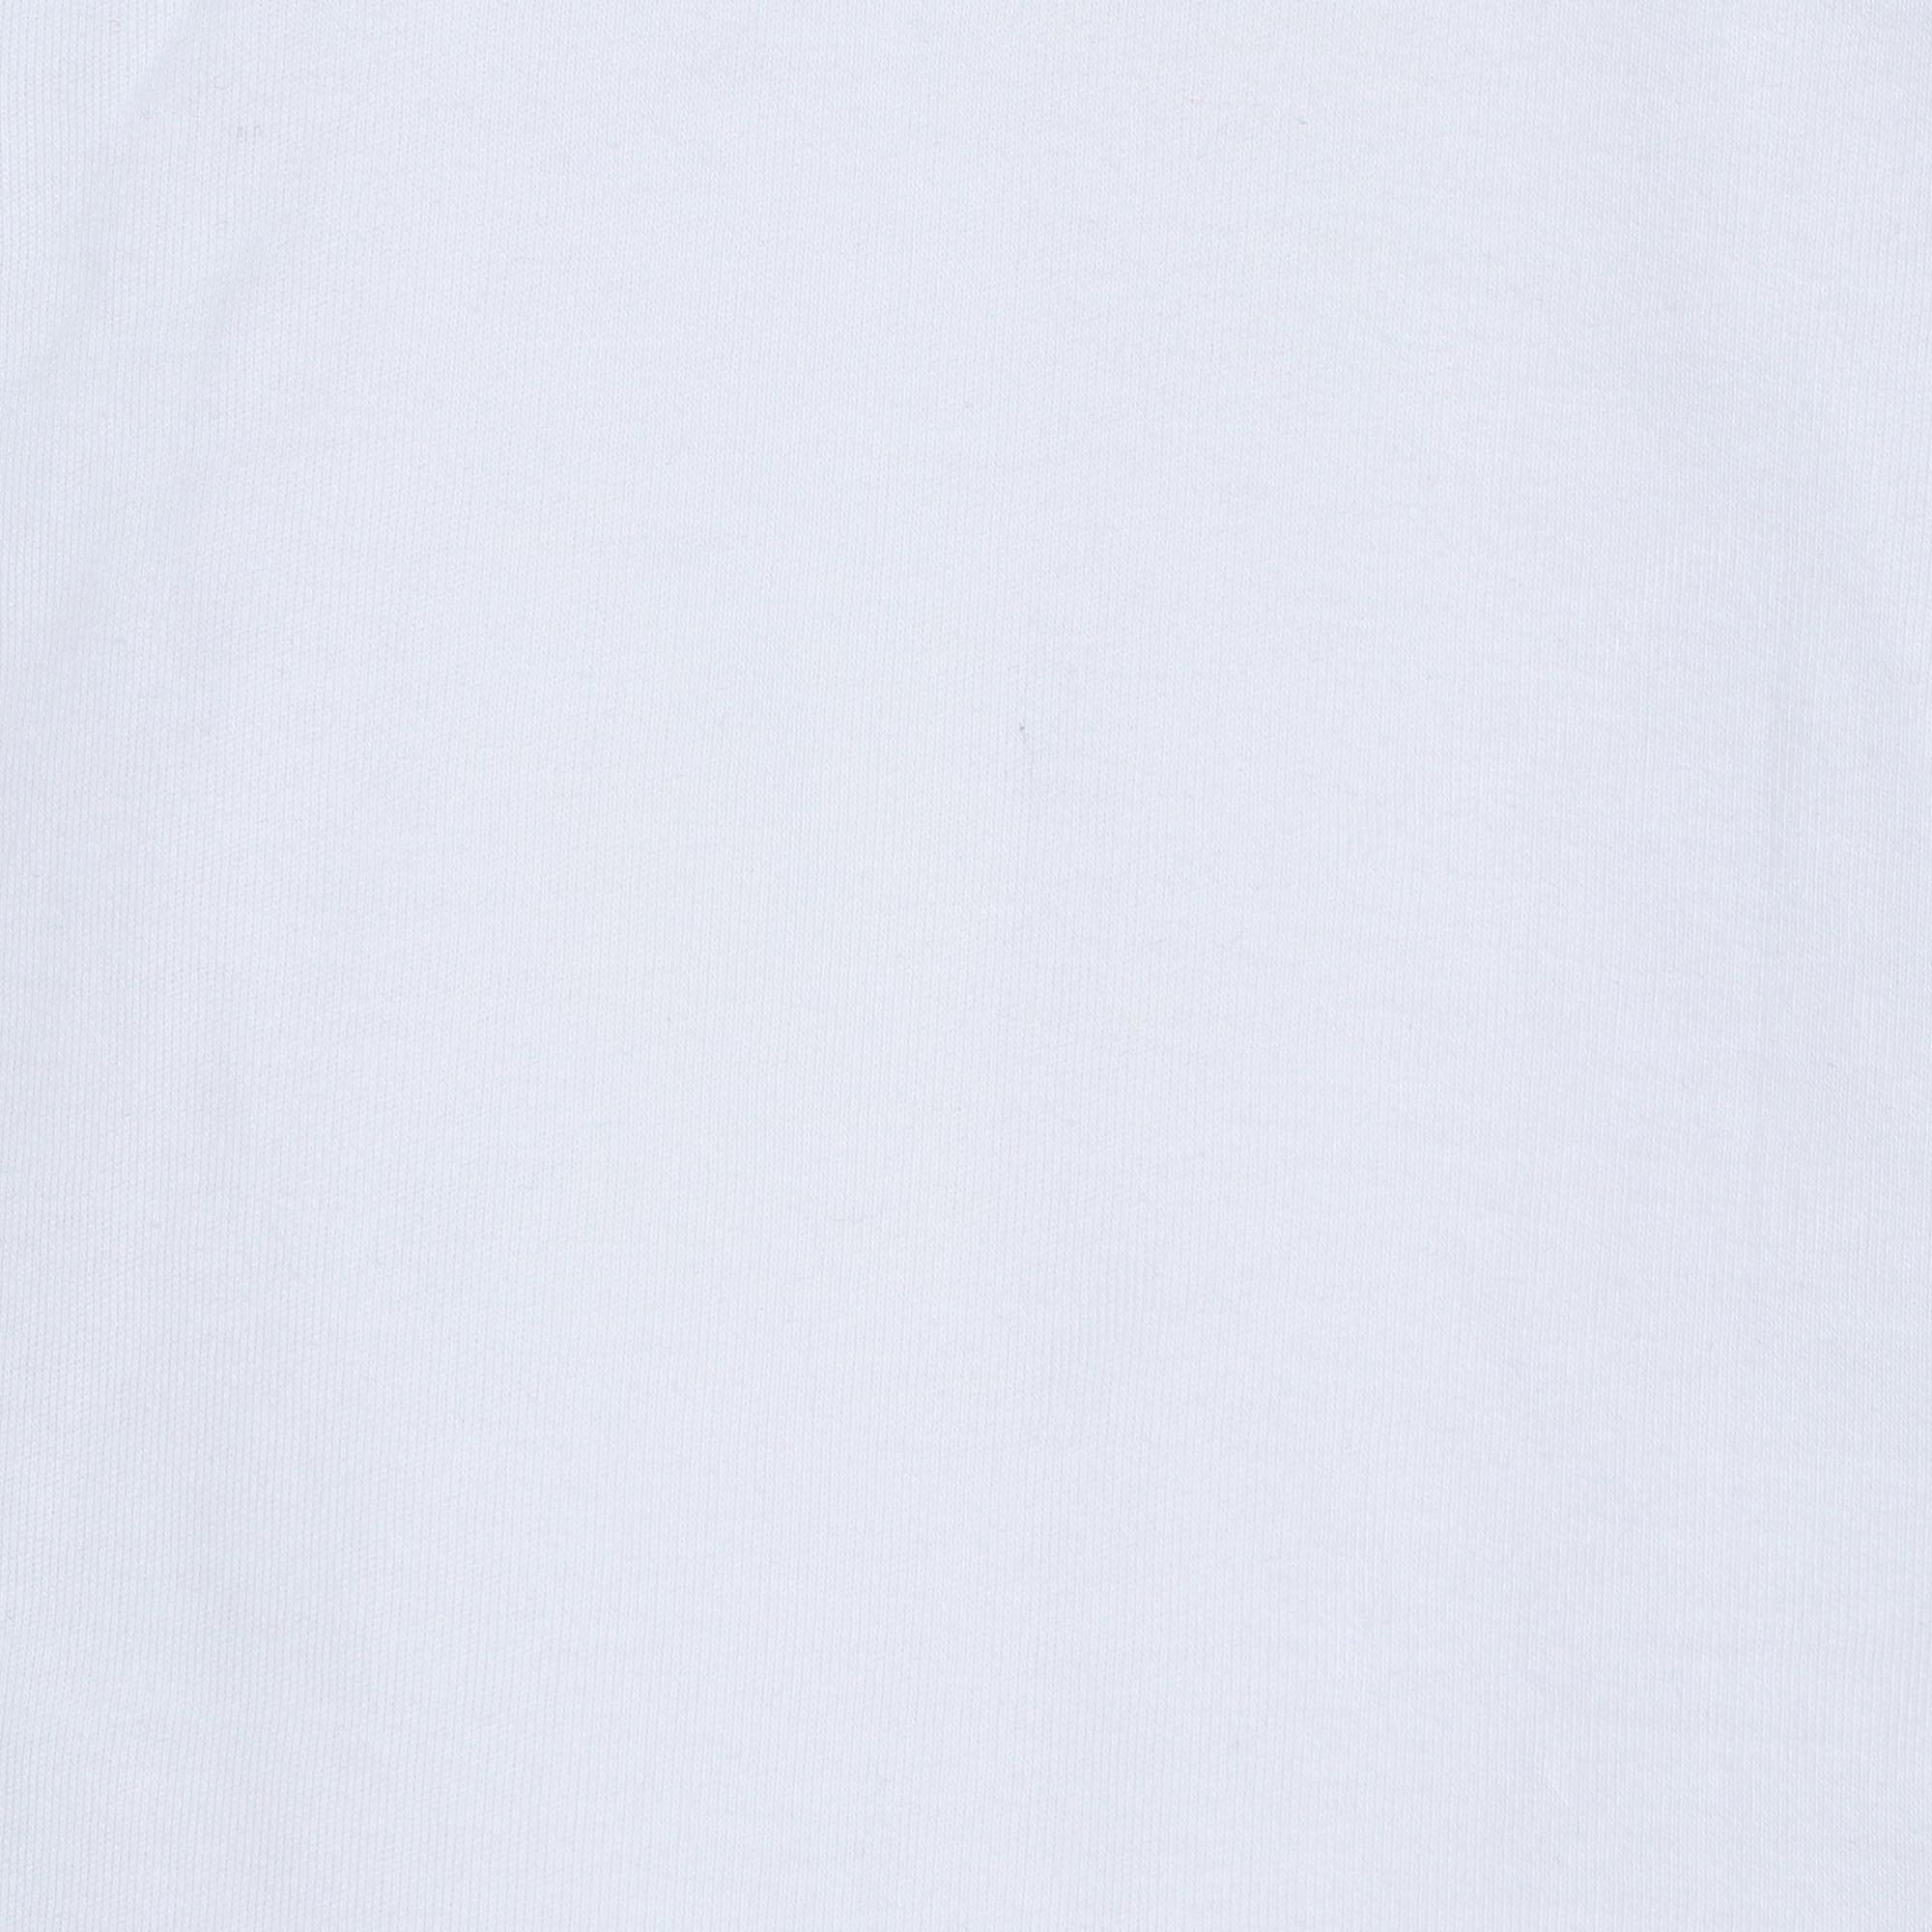 Мужская футболка-поло Diva Teks белая (DTD-07), цвет белый, размер 46-48 - фото 6